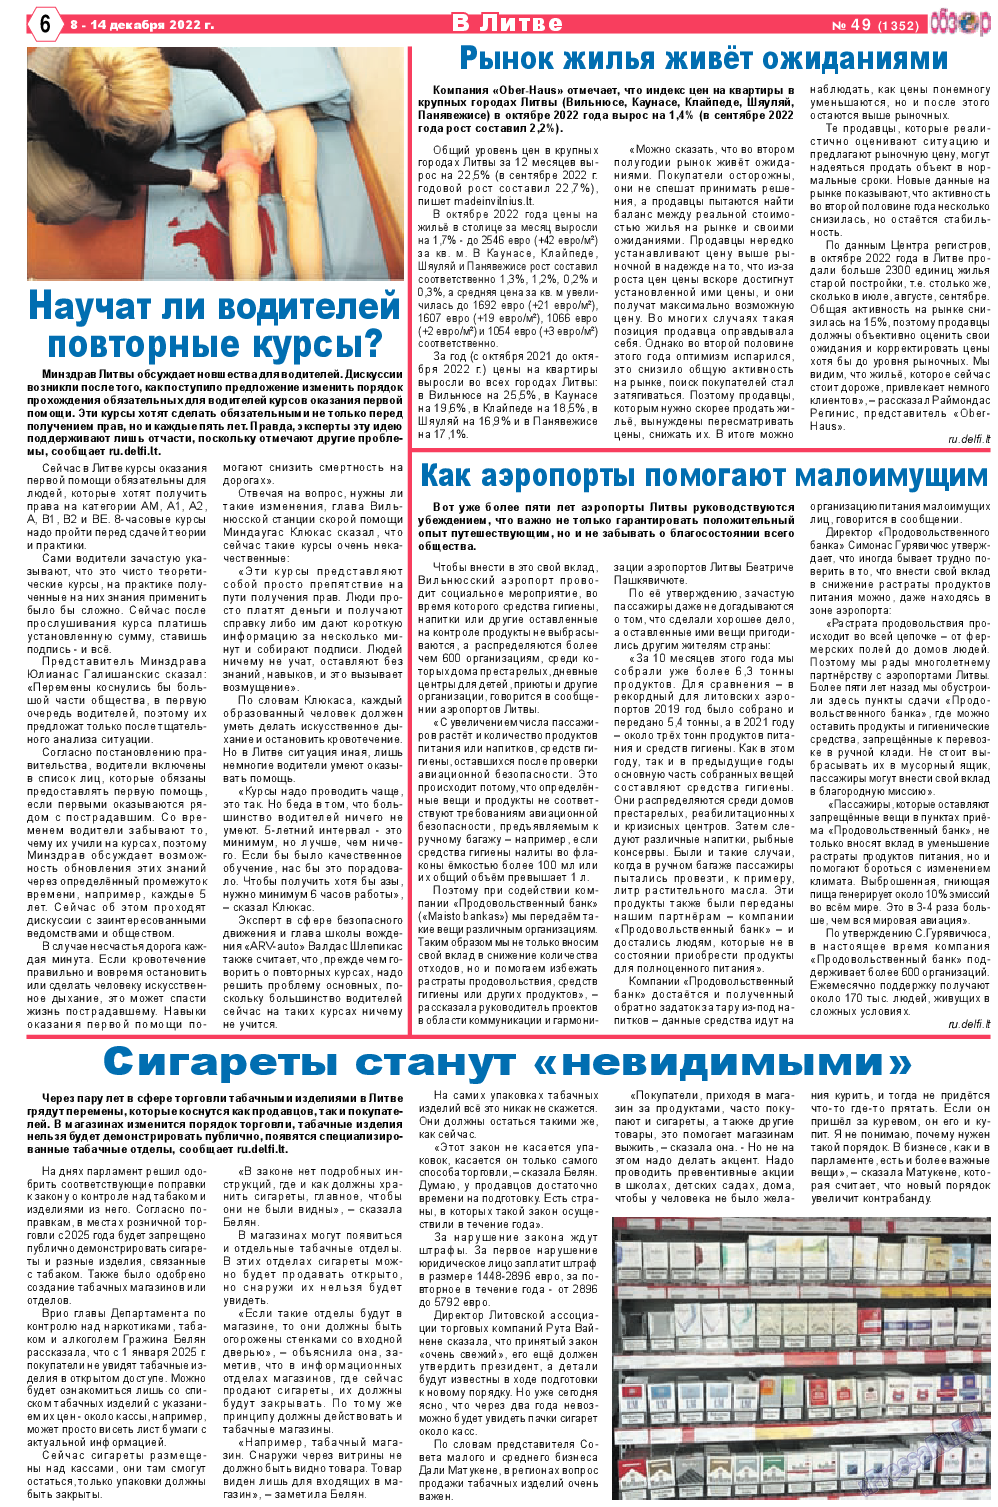 Обзор, газета. 2022 №49 стр.6